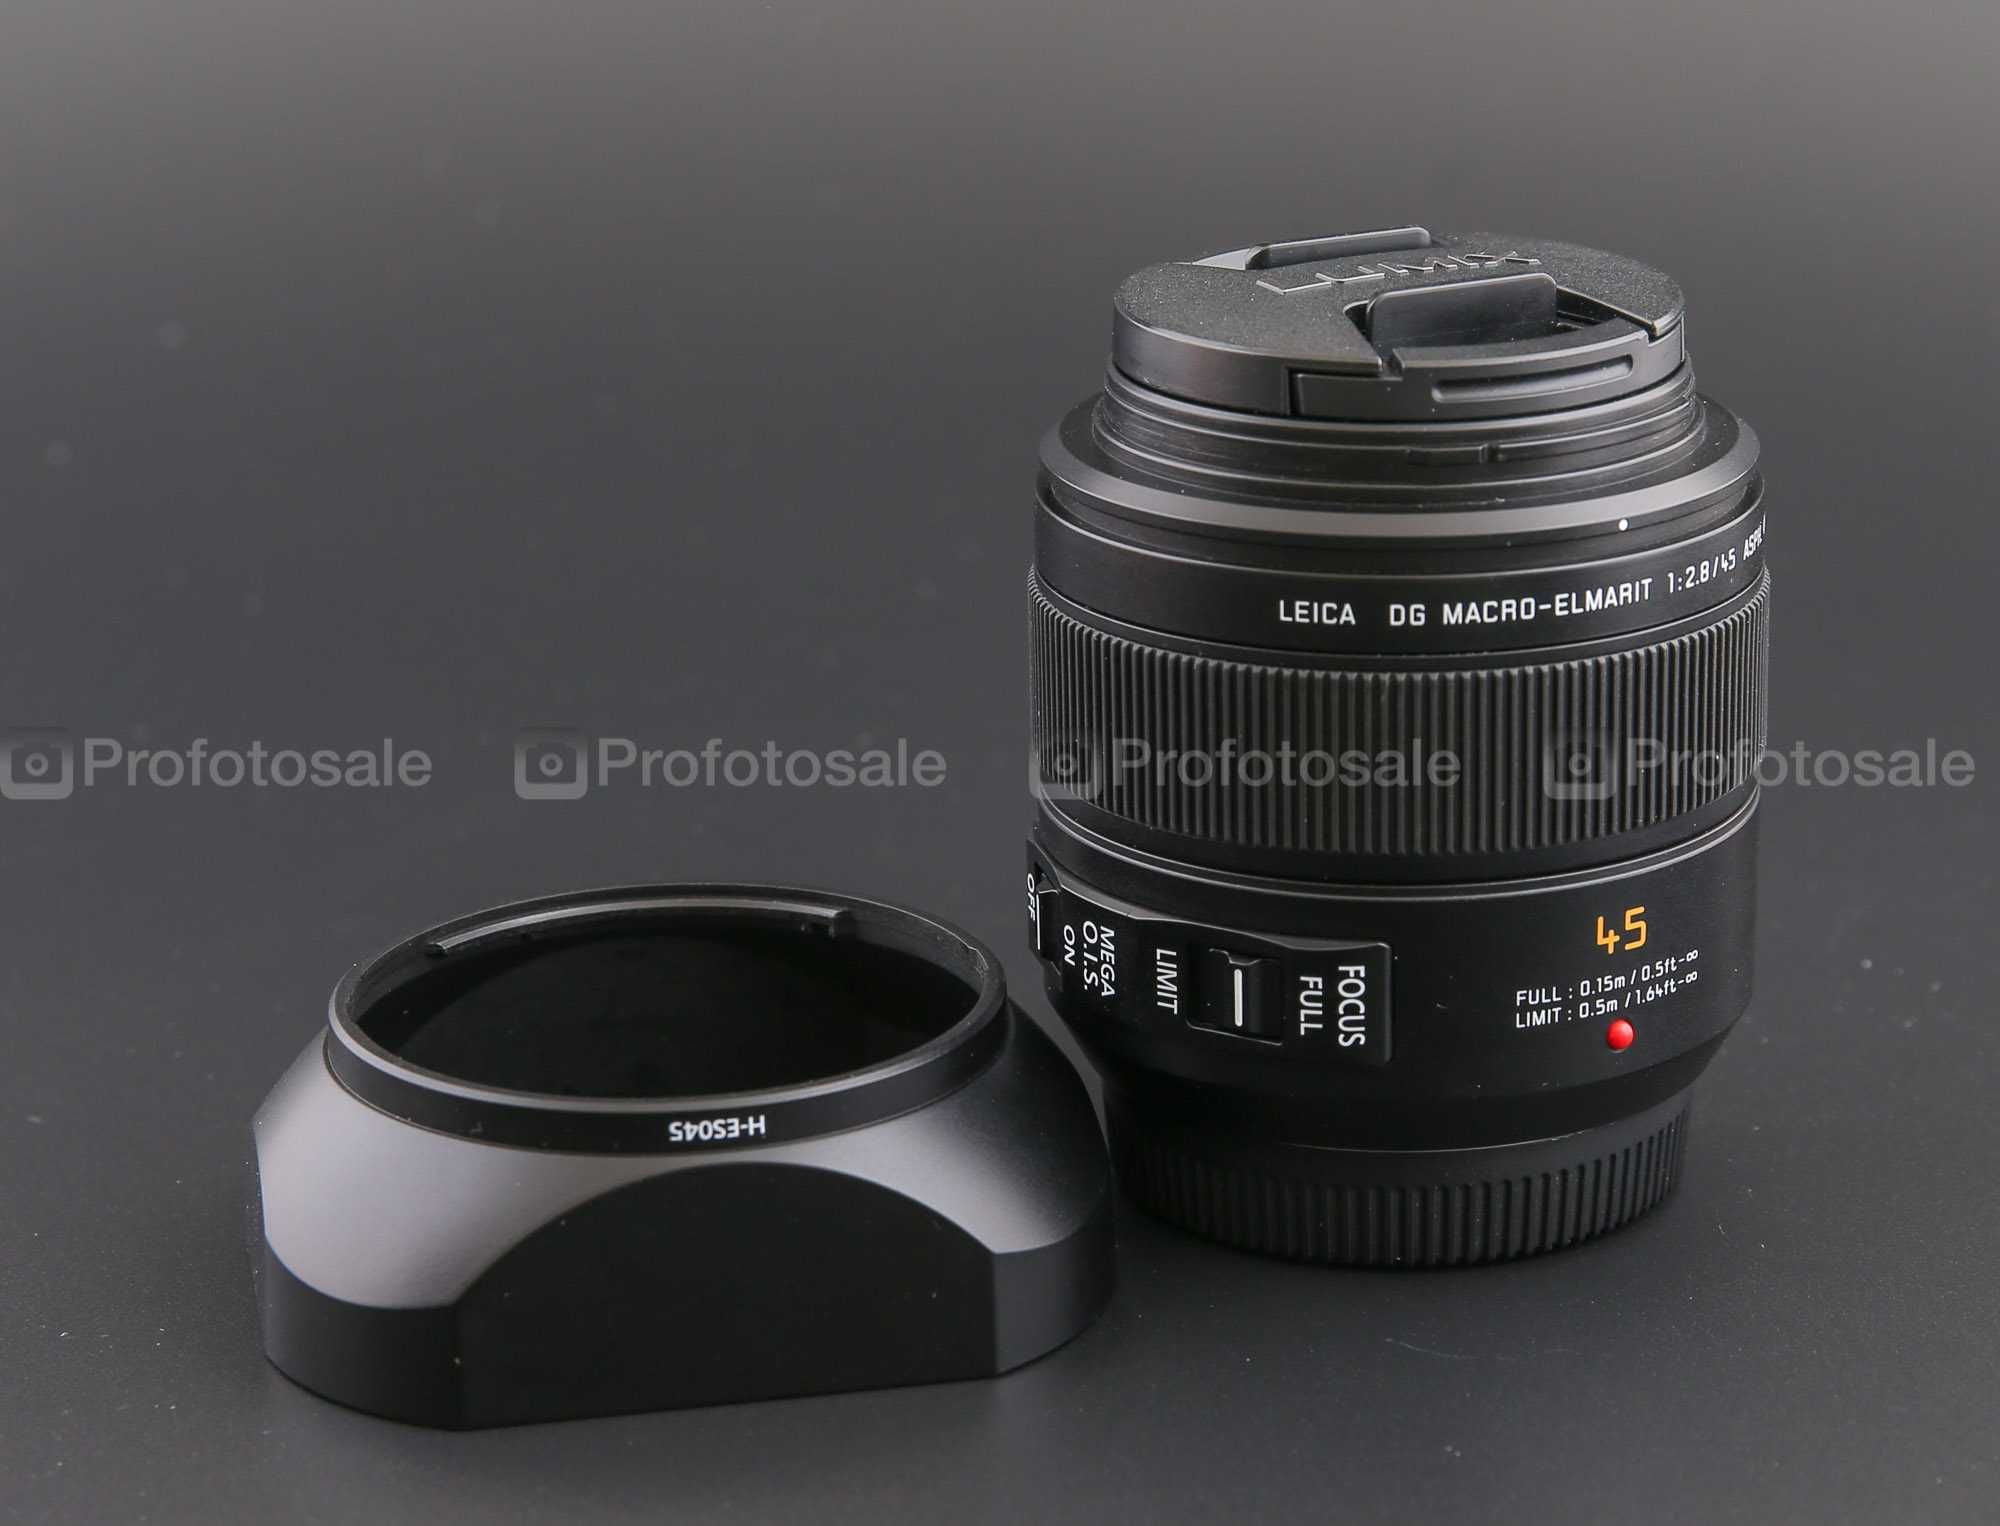 Panasonic Leica DG 45mm f/2.8 ASPH. MEGA O.I.S. (H-ES045)